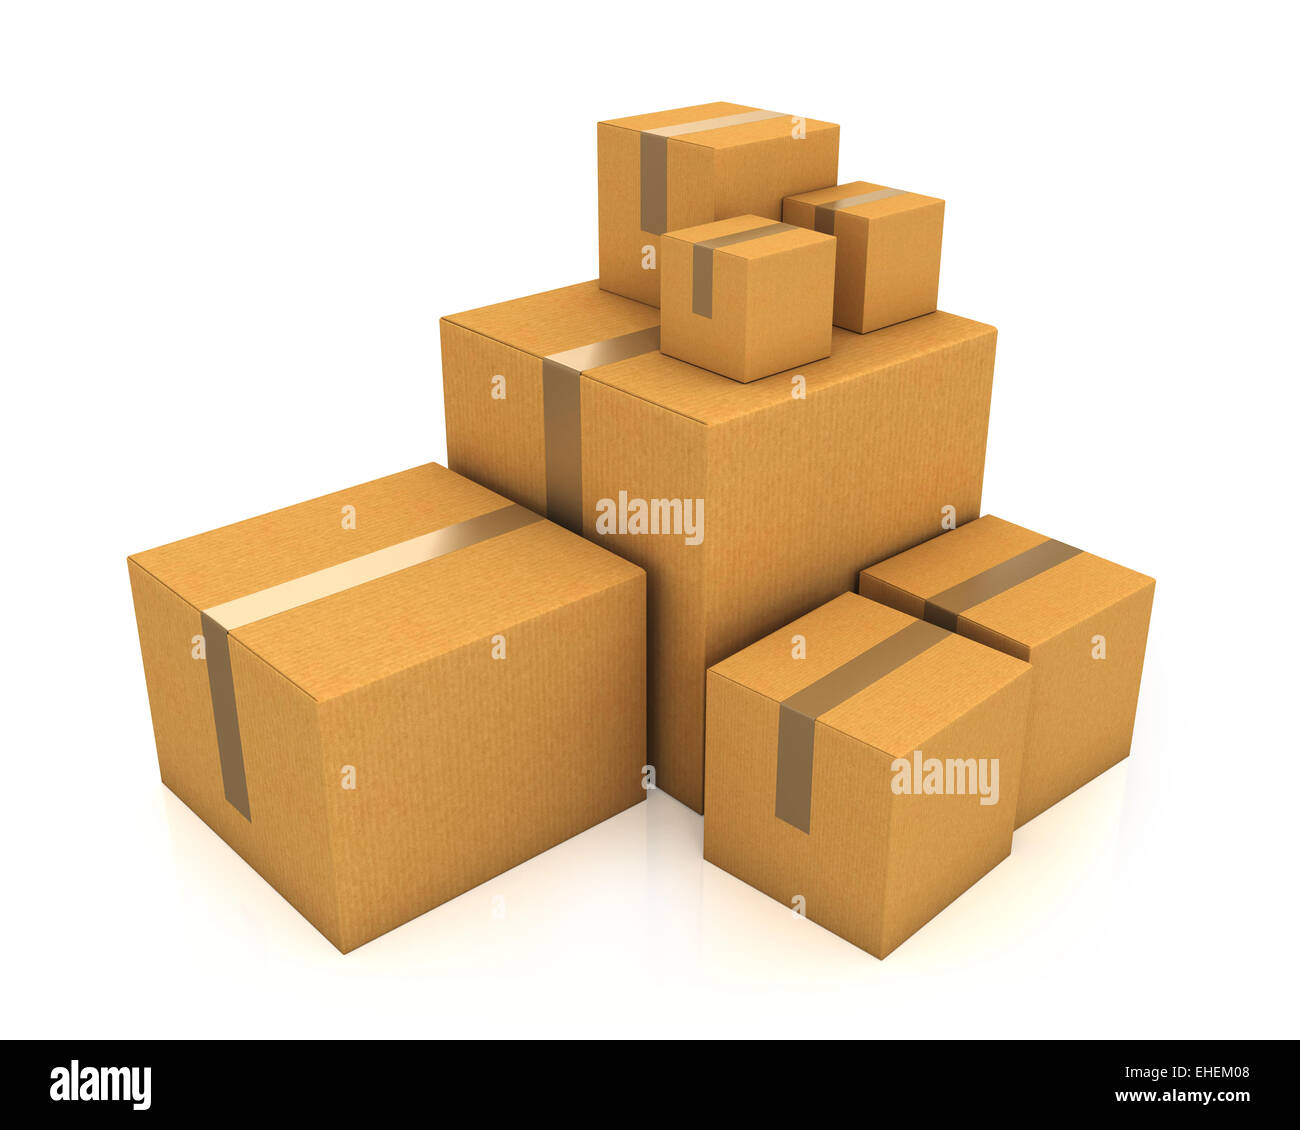 La pila de cajas de cartón de diferente tamaño. Foto de stock